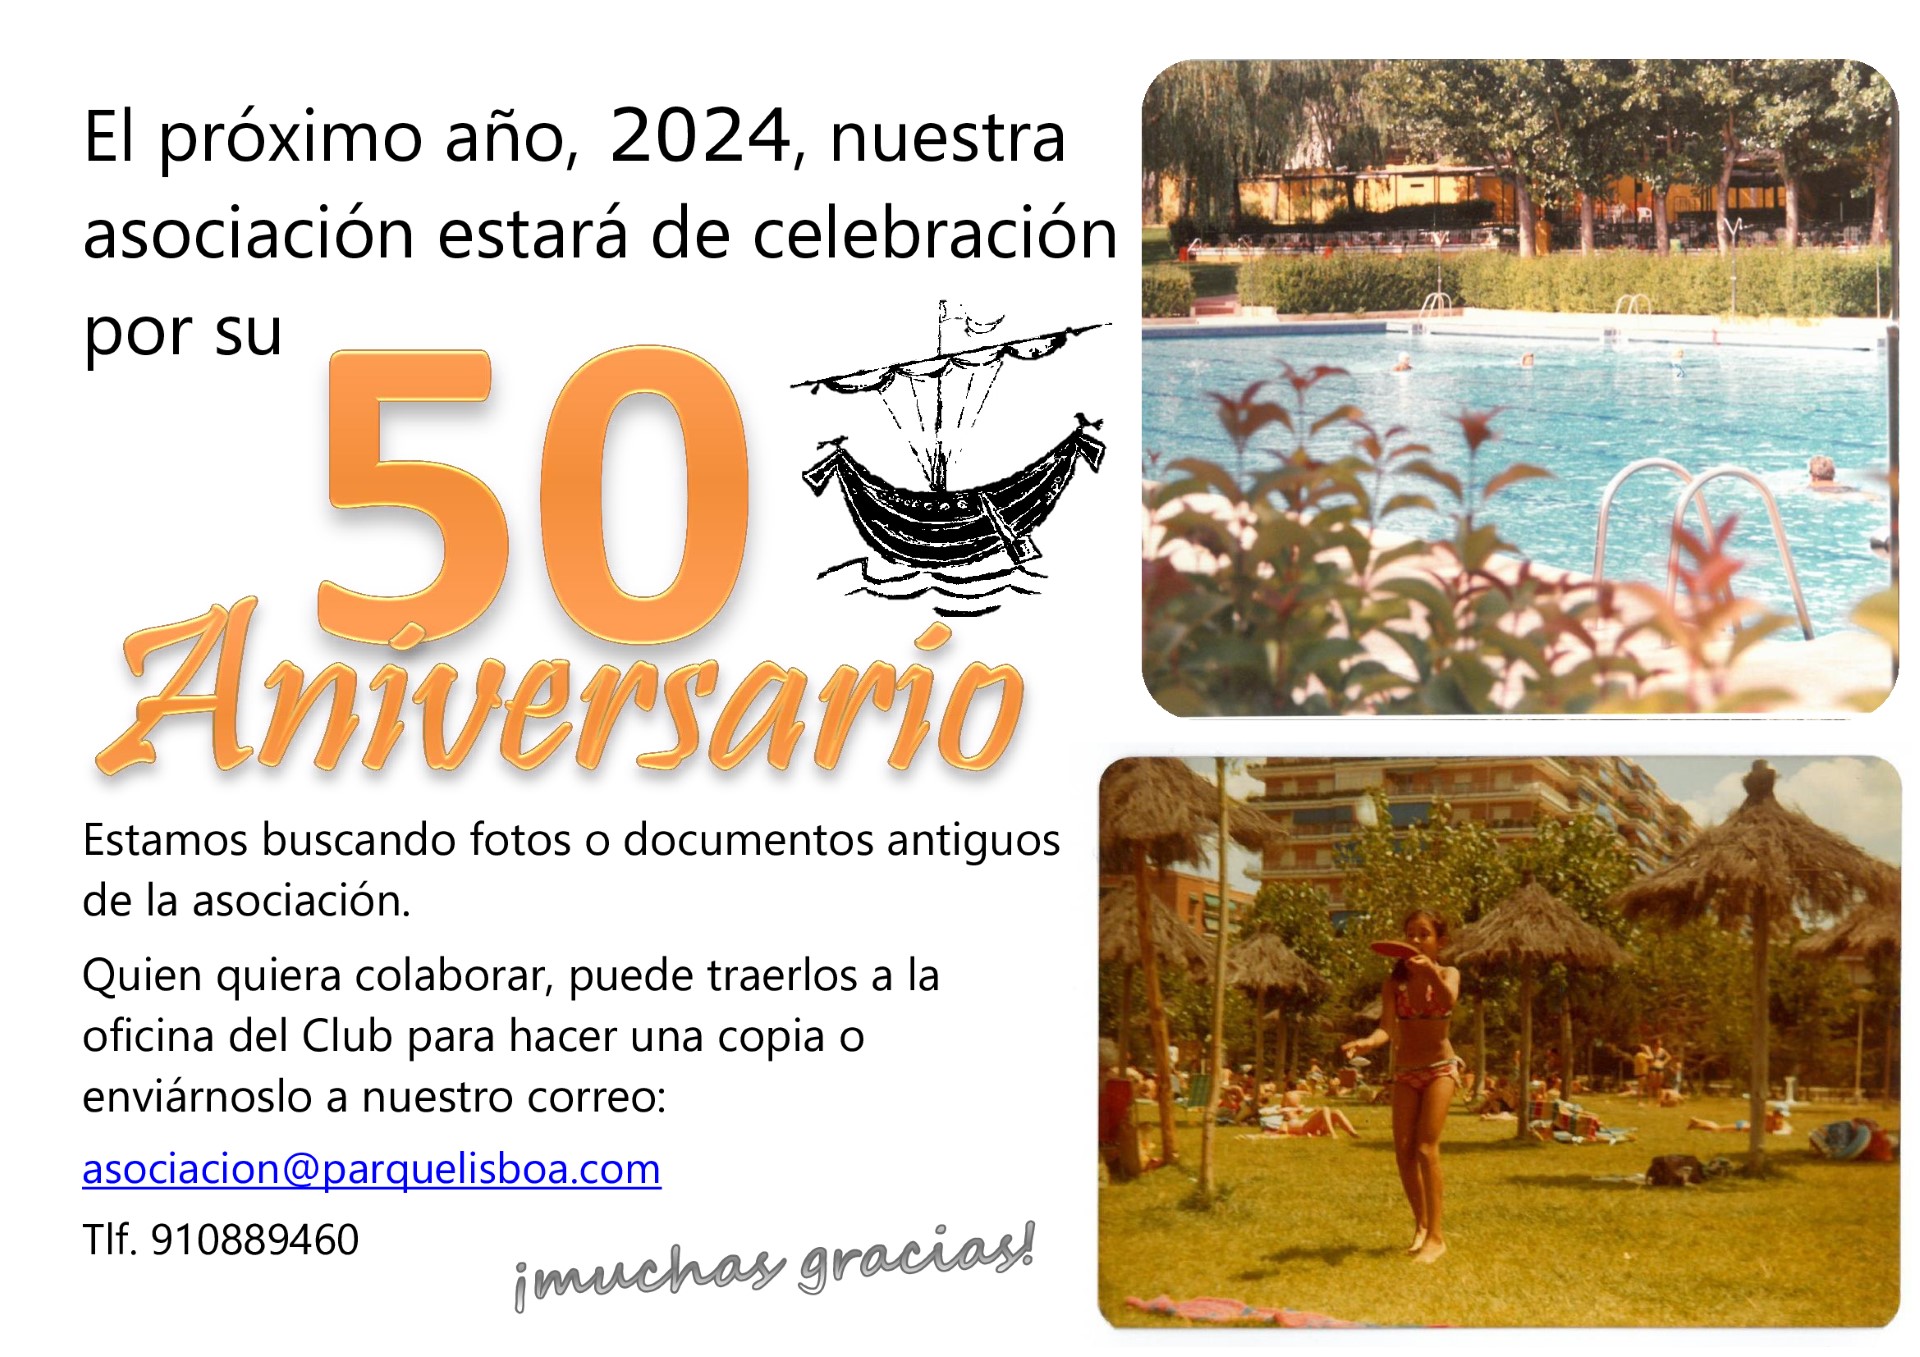 De celebración en Alcorcón: el CSD Parque Lisboa cumple 50 años